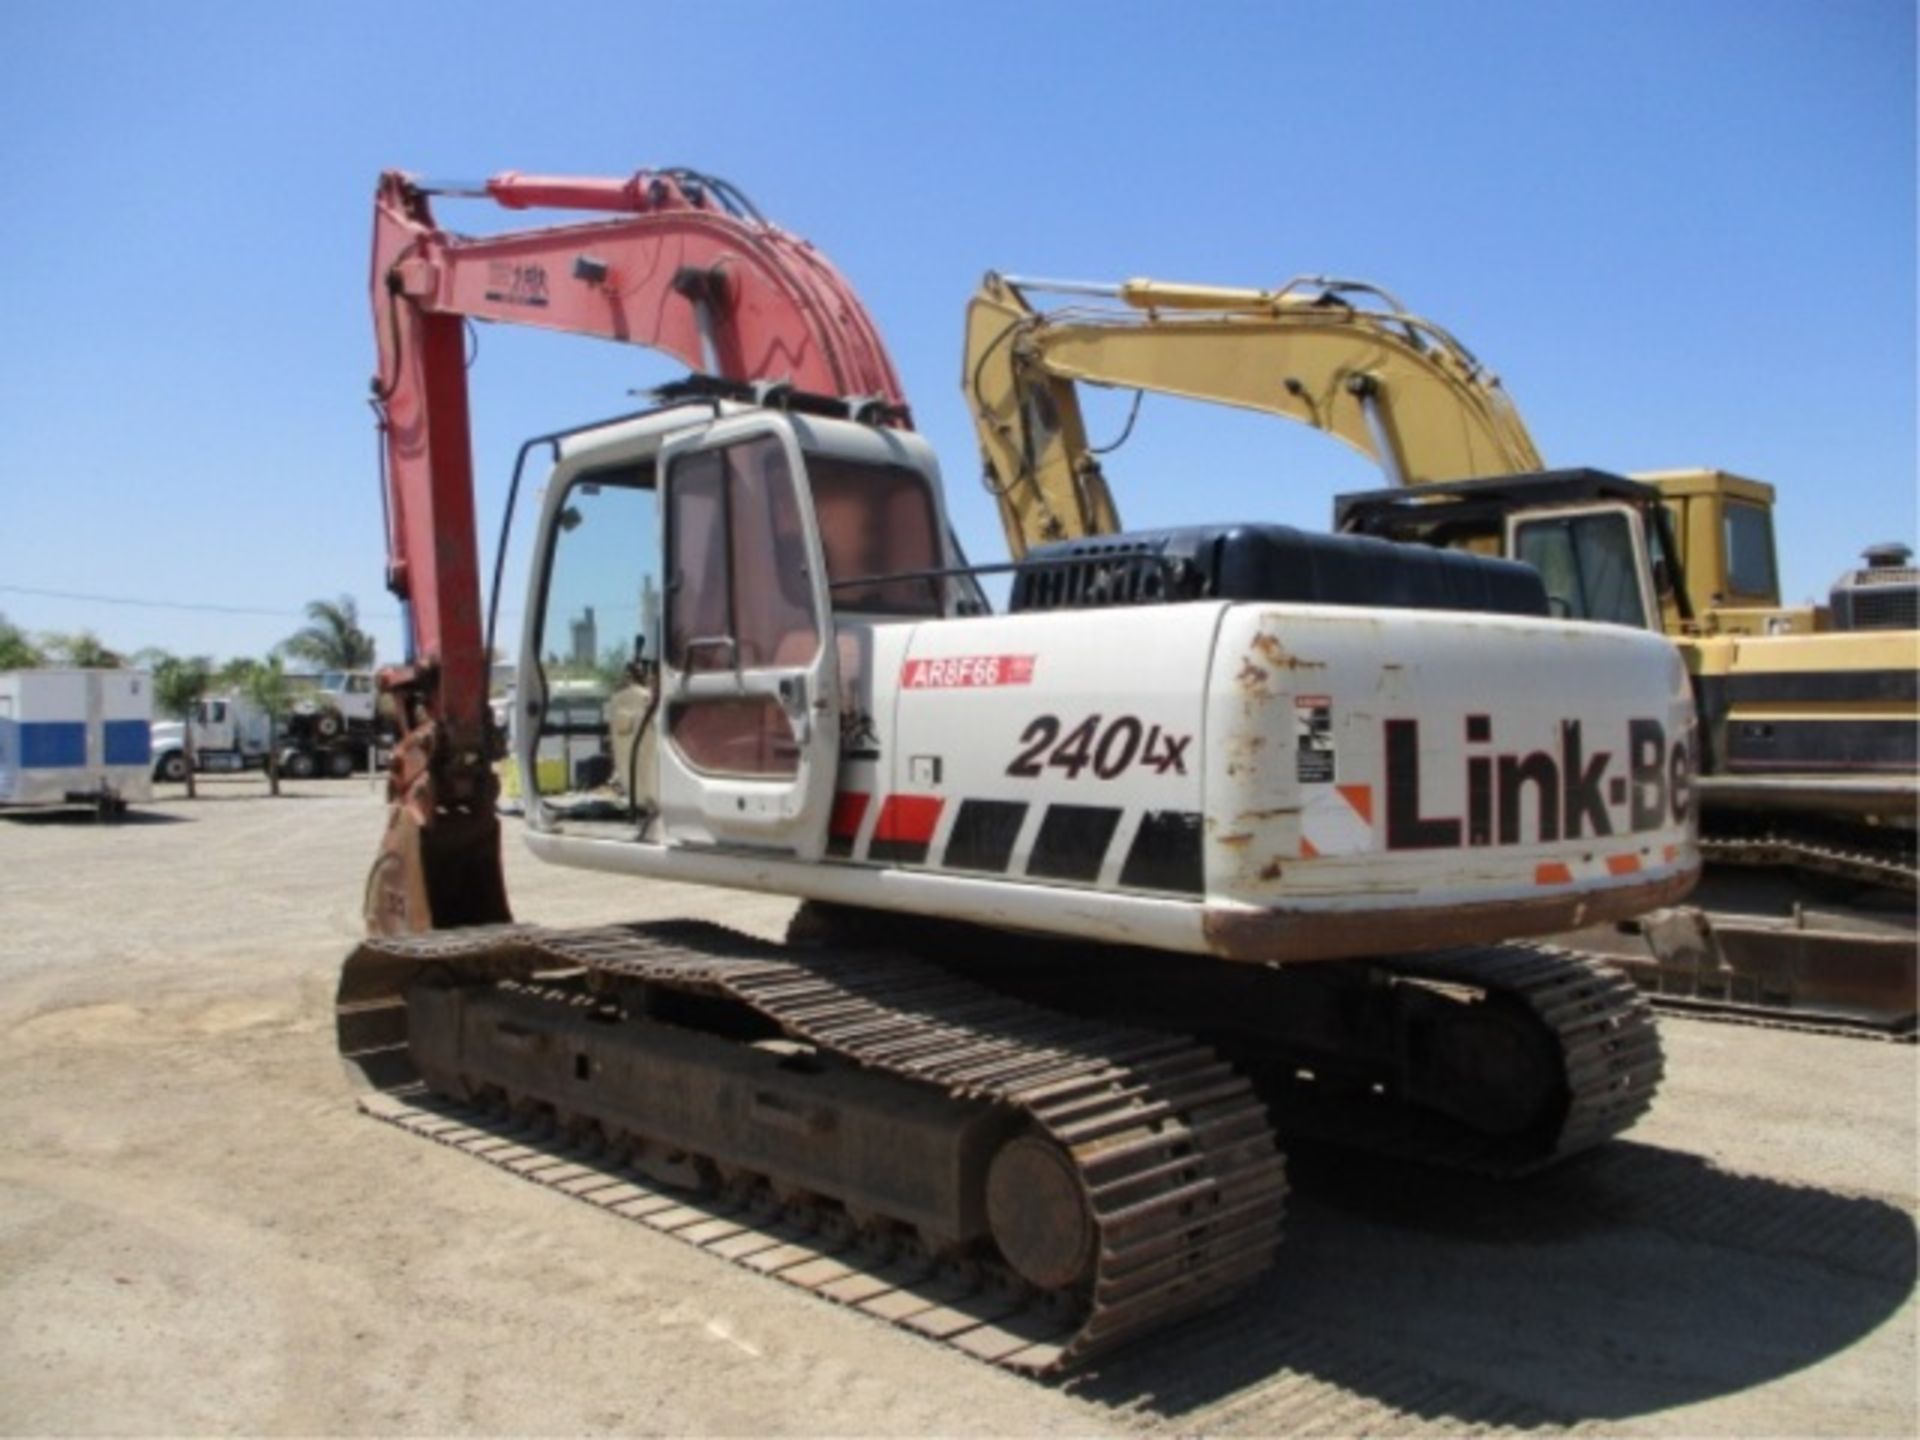 2005 Linkbelt 240 LX Hydraulic Excavator, Isuzu 6-Cyl Diesel, Hendrix Q/C, Cab W/AC, 24" Tooth - Image 11 of 39